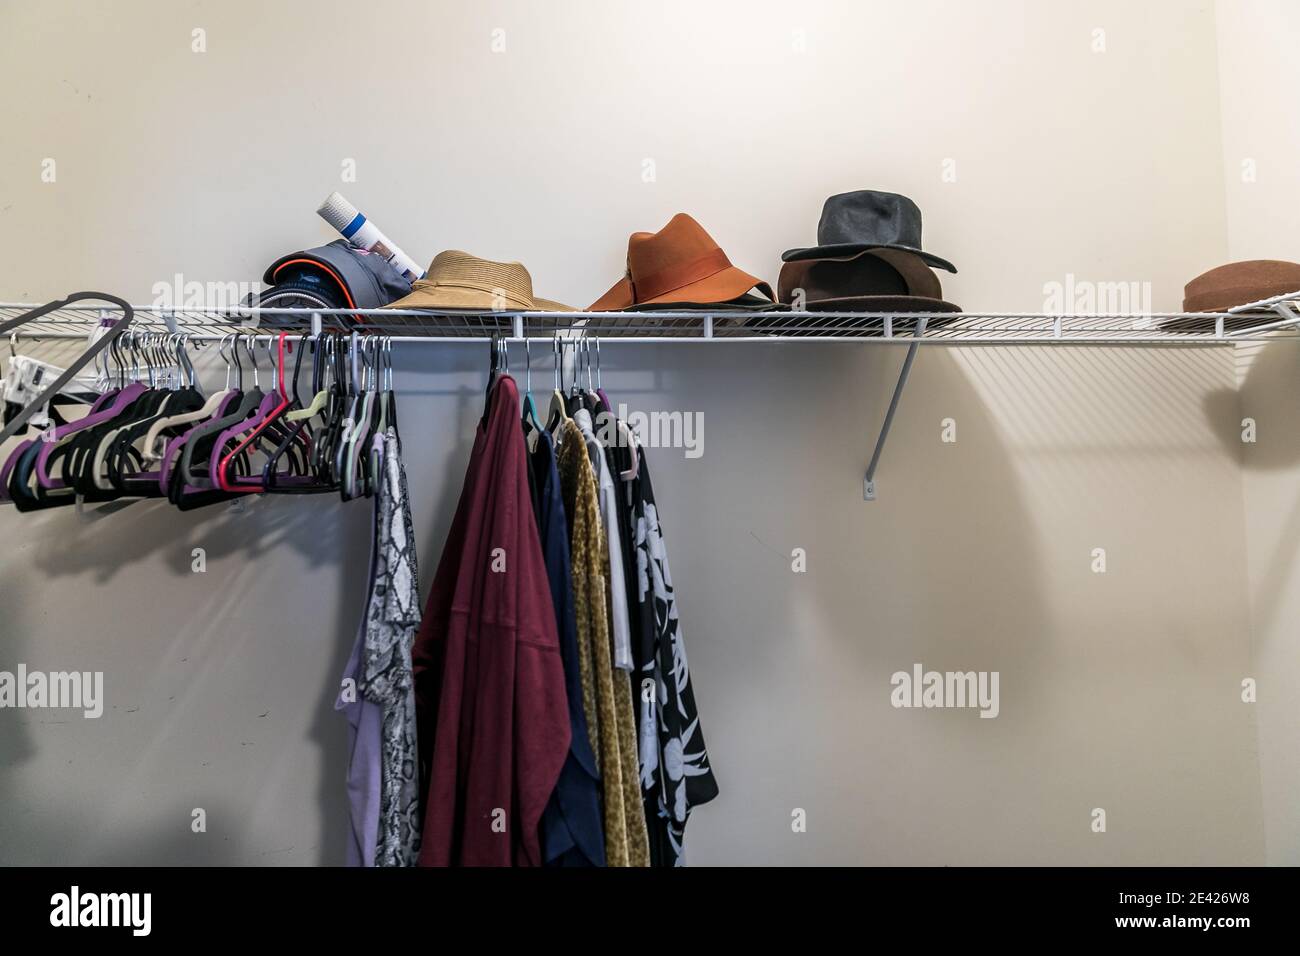 Una passeggiata per lo più vuota in un armadio disordinato con qualche appeso vestiti e cappelli Foto Stock